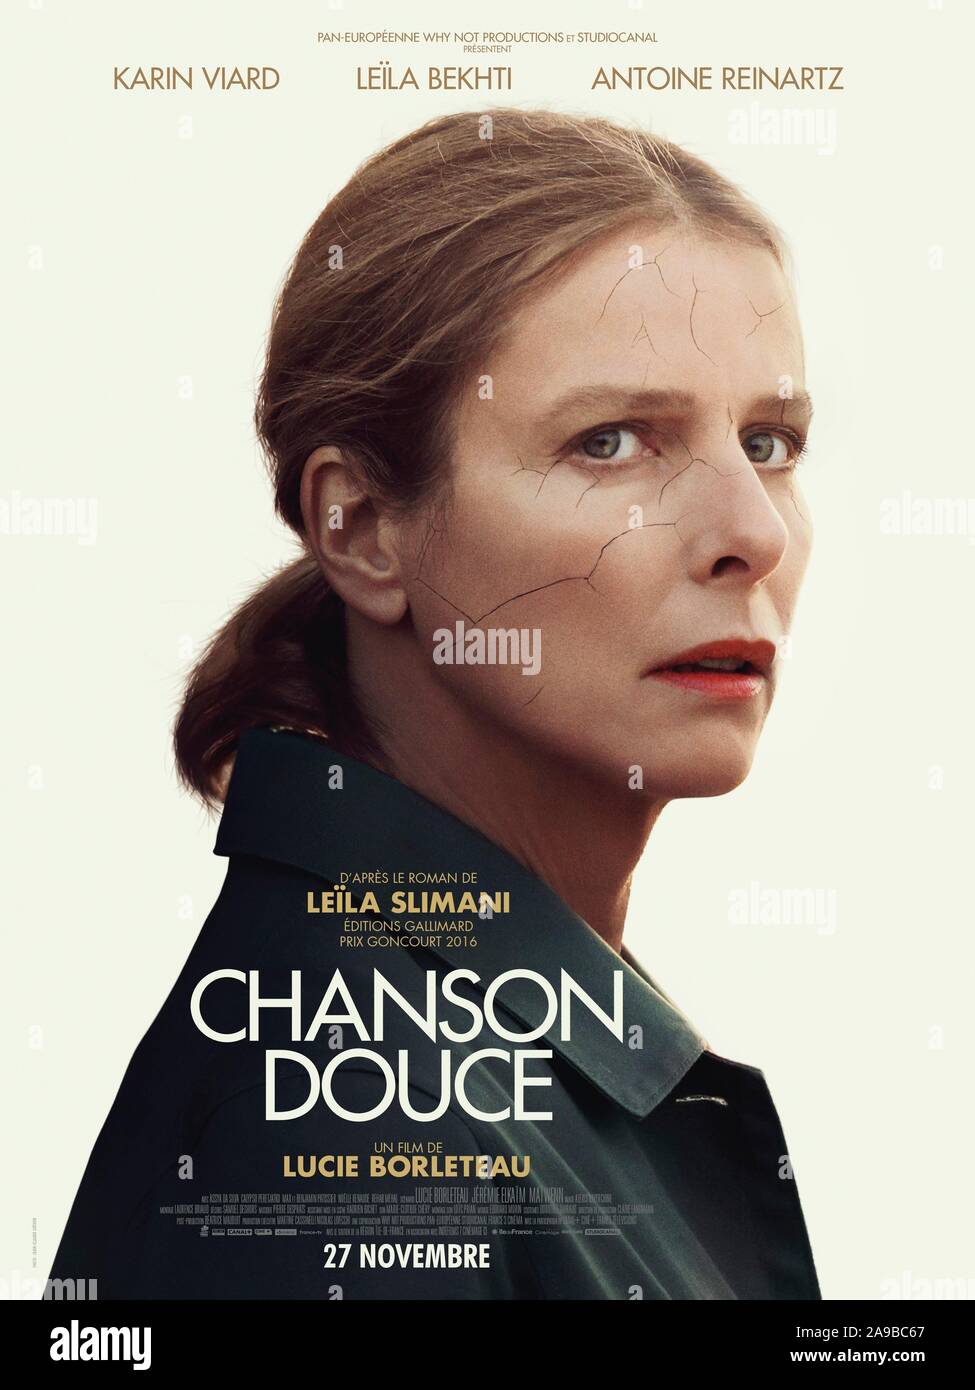 CHANSON DOUCE (2019), directed by LUCIE BORLETEAU. Credit: Canal+ / Ciné+ / France 3 Cinéma / Pan Européenne / Why Not / Album Stock Photo